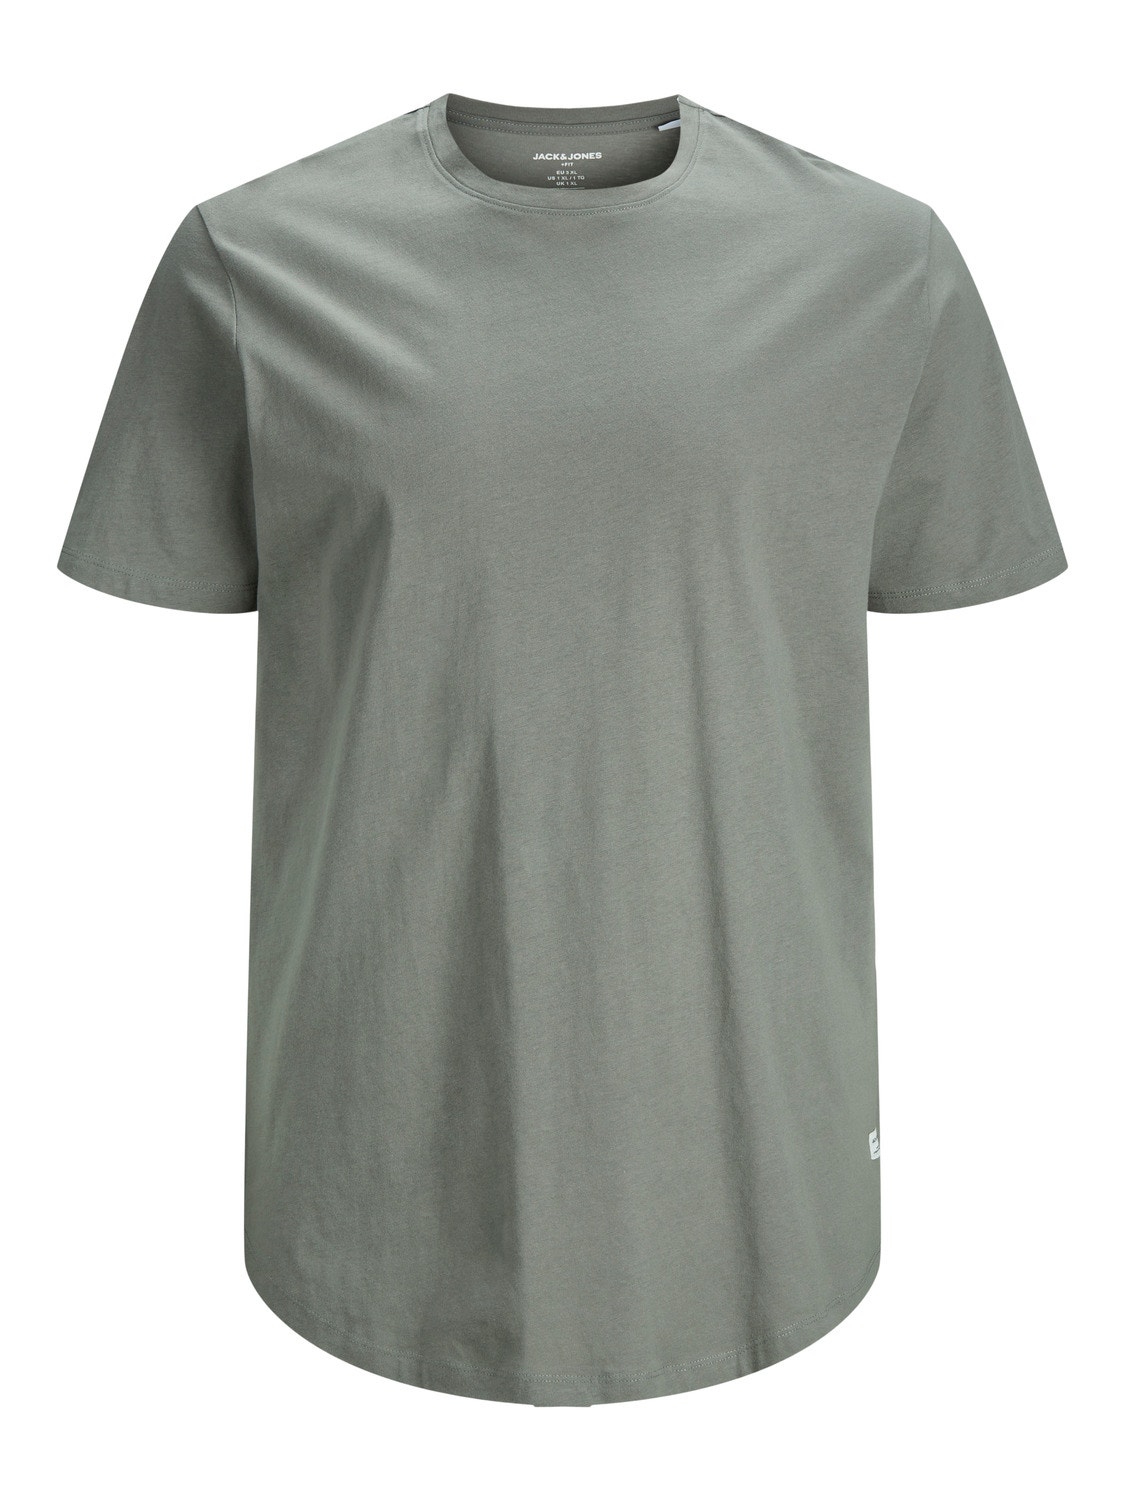 Jack & Jones Plus Size Plain T-shirt -Sedona Sage - 12184933